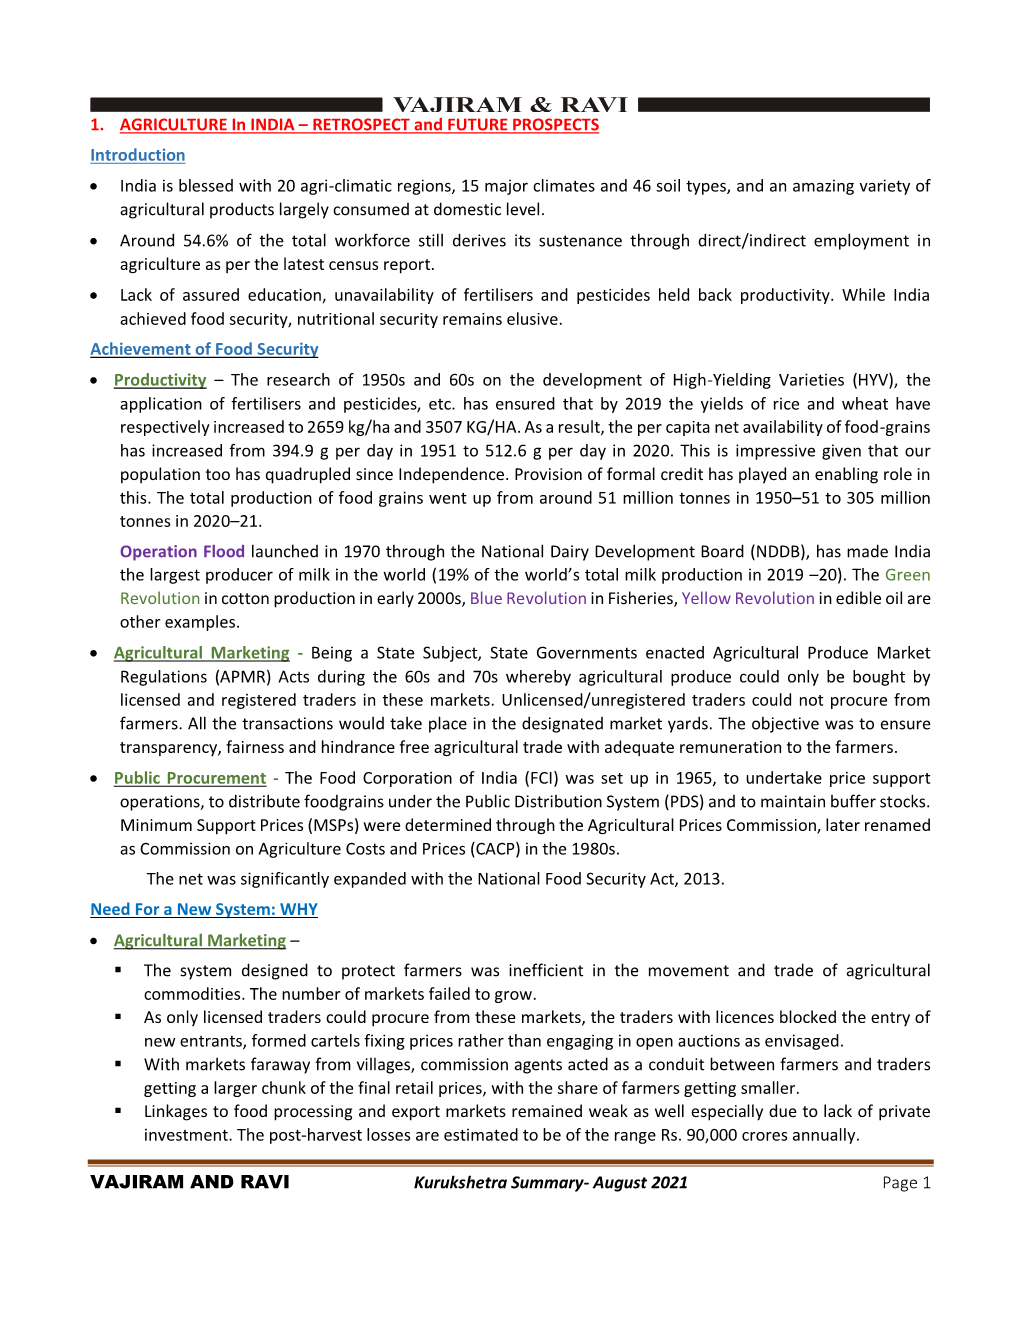 VAJIRAM and RAVI Kurukshetra Summary- August 2021 Page 1 1